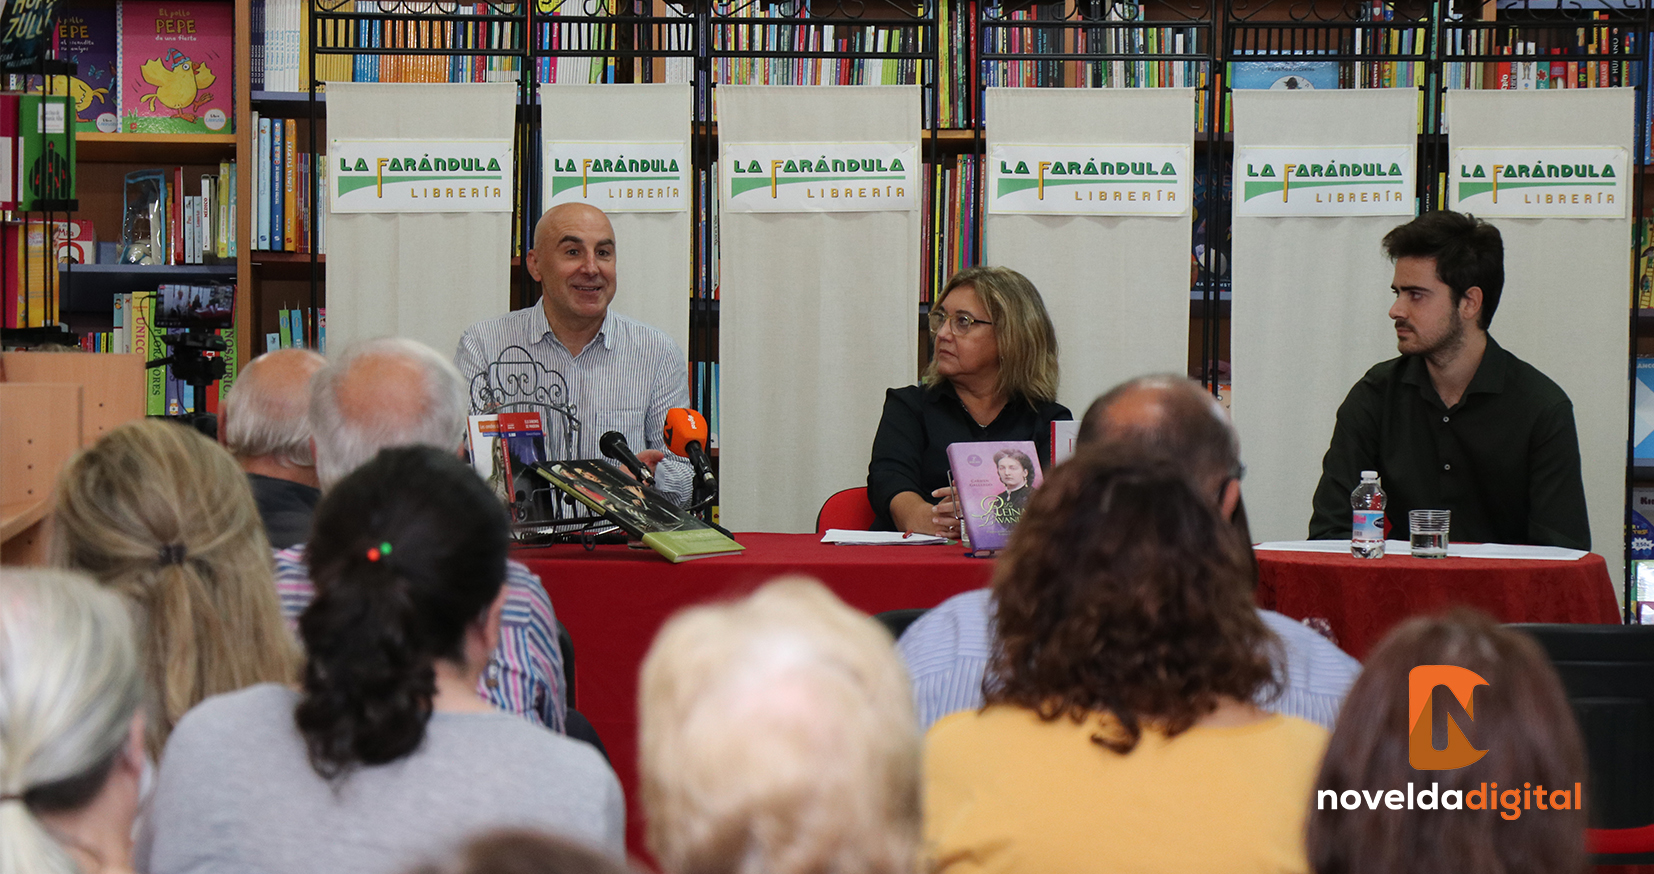 Excelente encuentro literario «Afinidades electivas» en la librería La Farándula con Silvestre Vilaplana y Carmen Gallardo